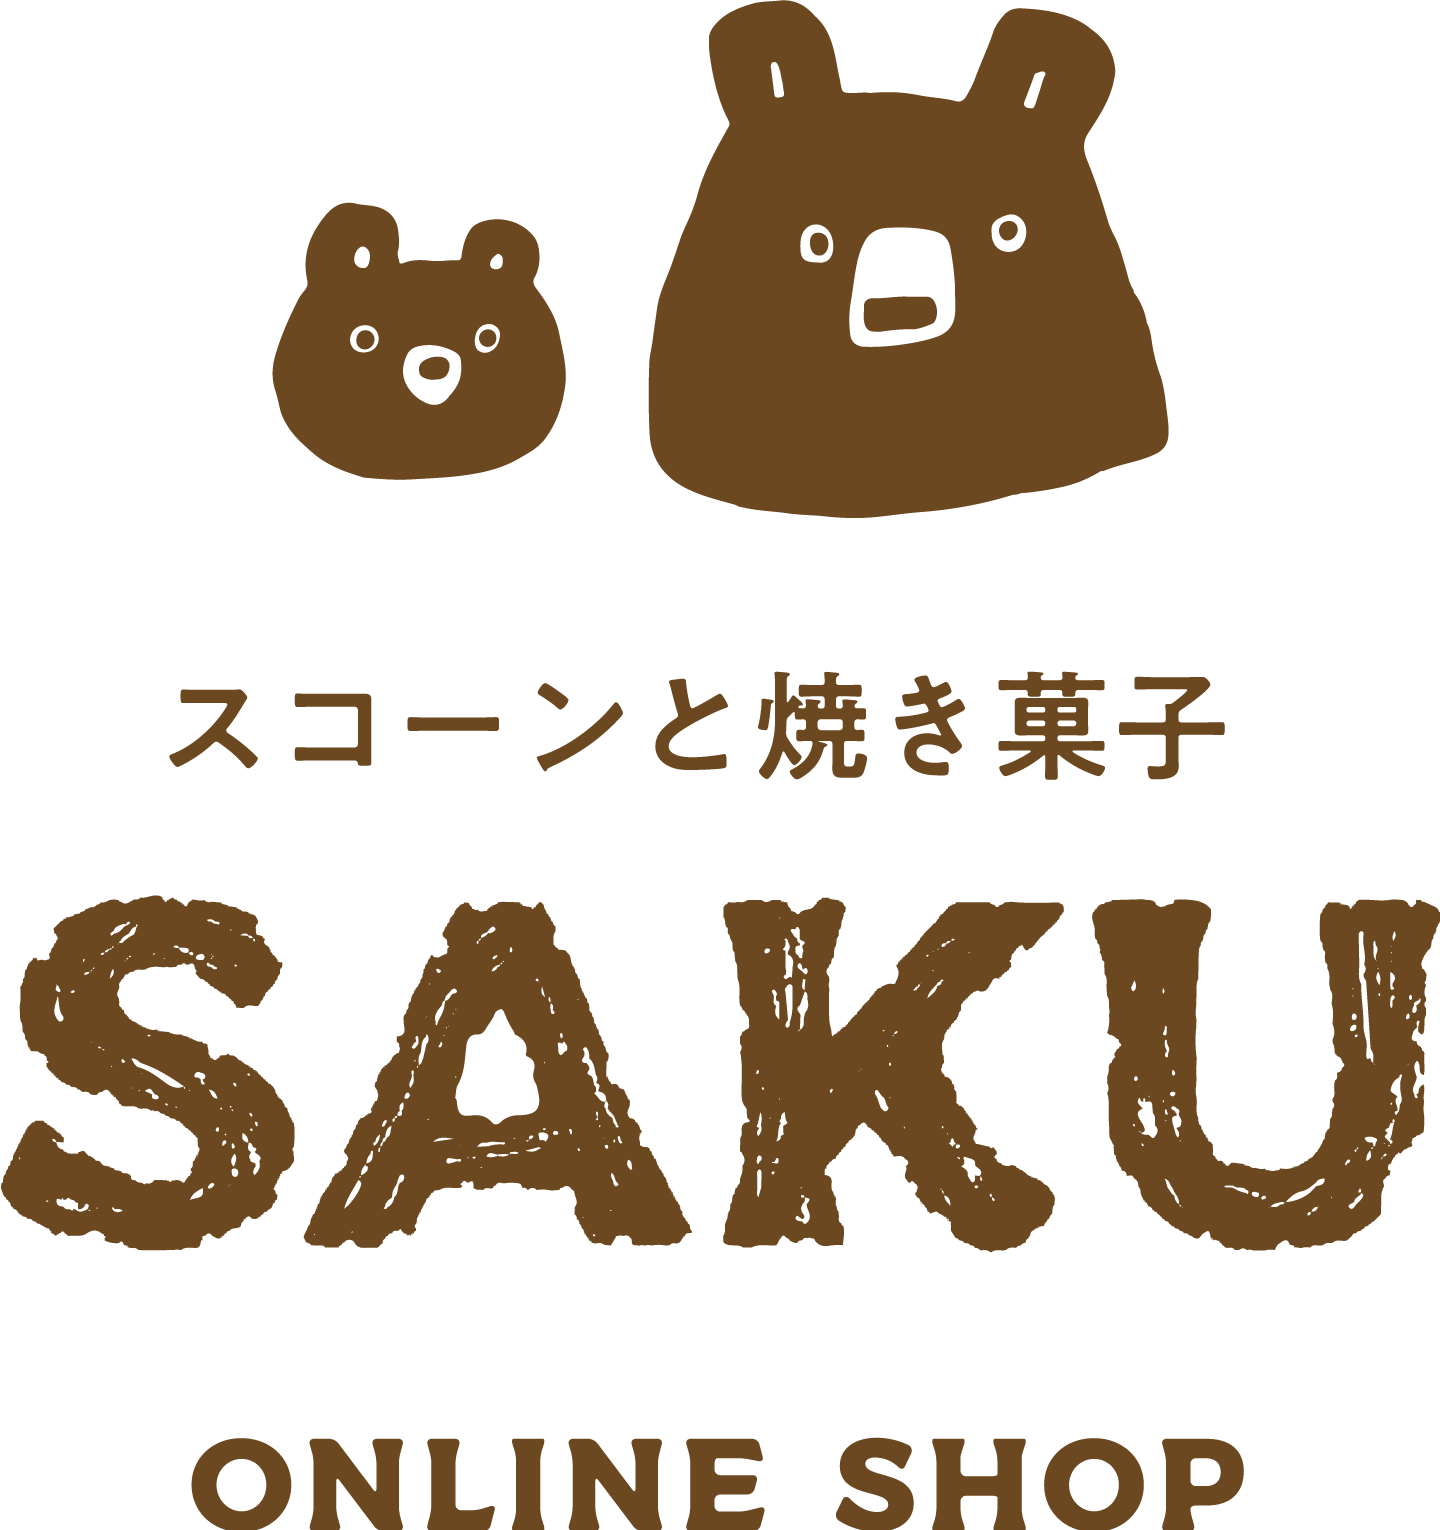 スコーンと焼き菓子ギフトの通販サイト SAKU